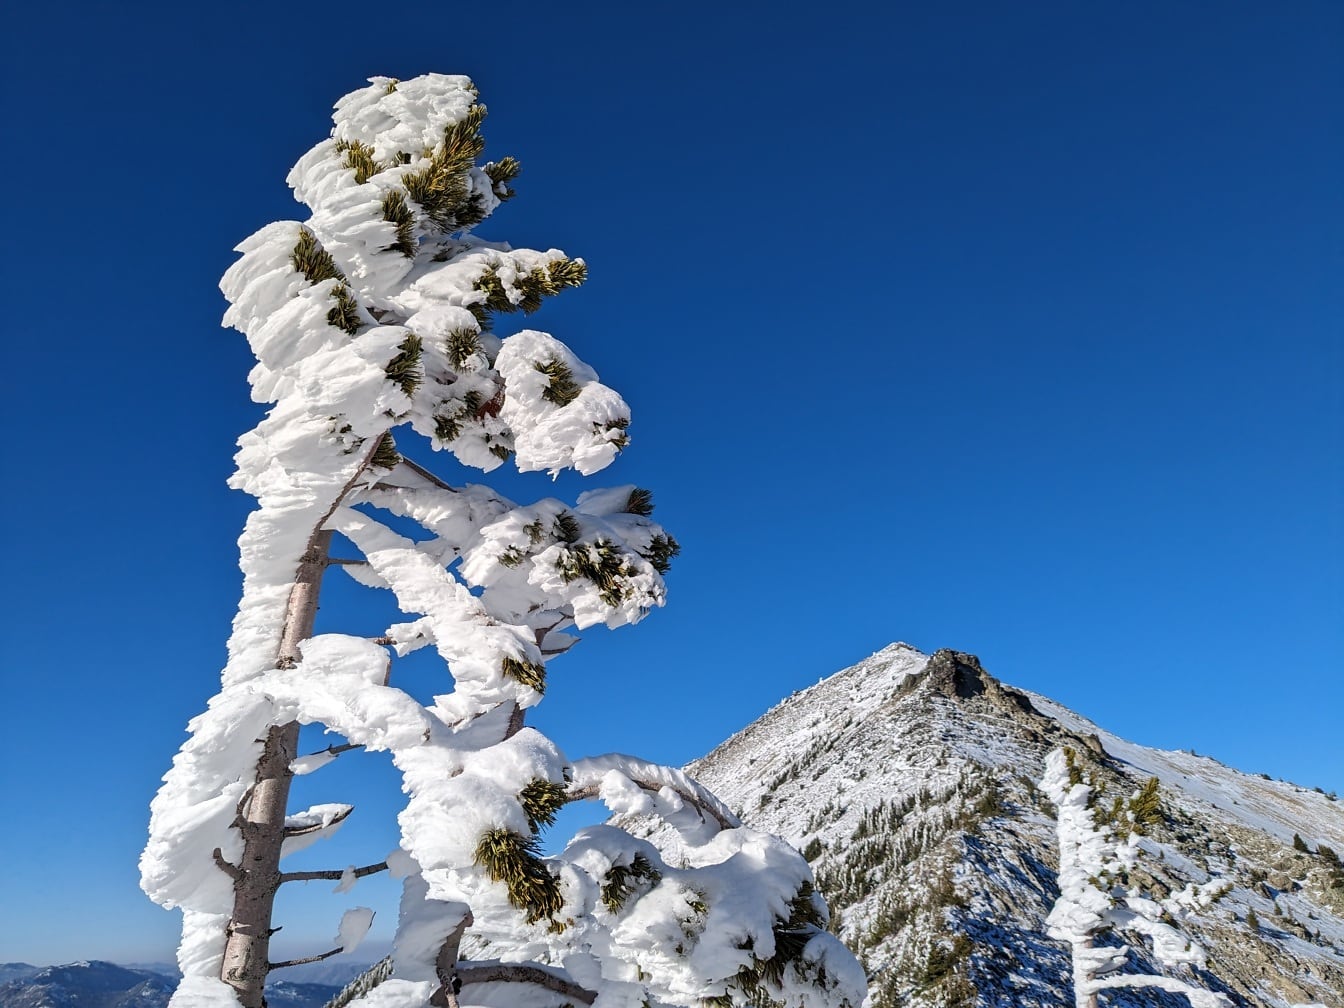 Rami di conifere con neve ghiacciata con cielo blu scuro come sfondo